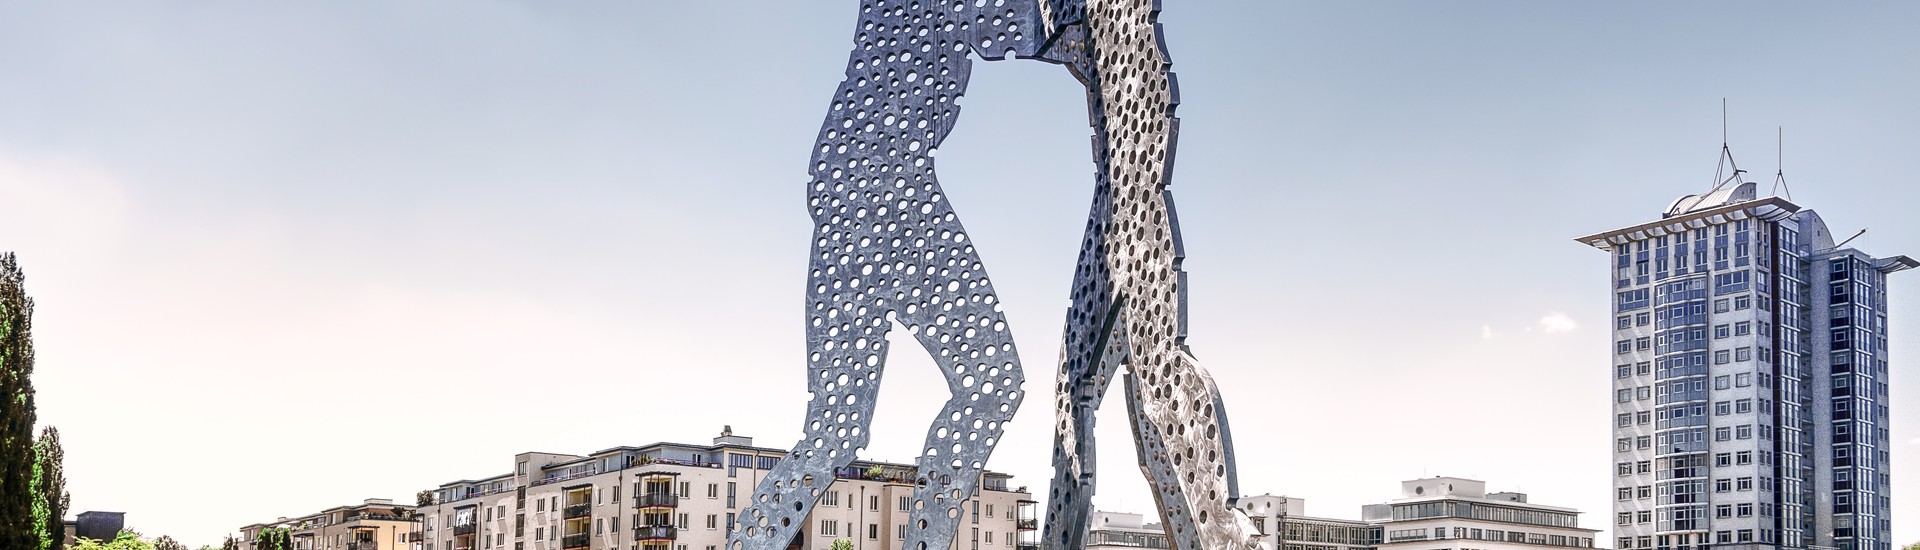 Berlin-Treptow-Immobilien-Treptow-Molecule-Man-Skulptur.jpeg